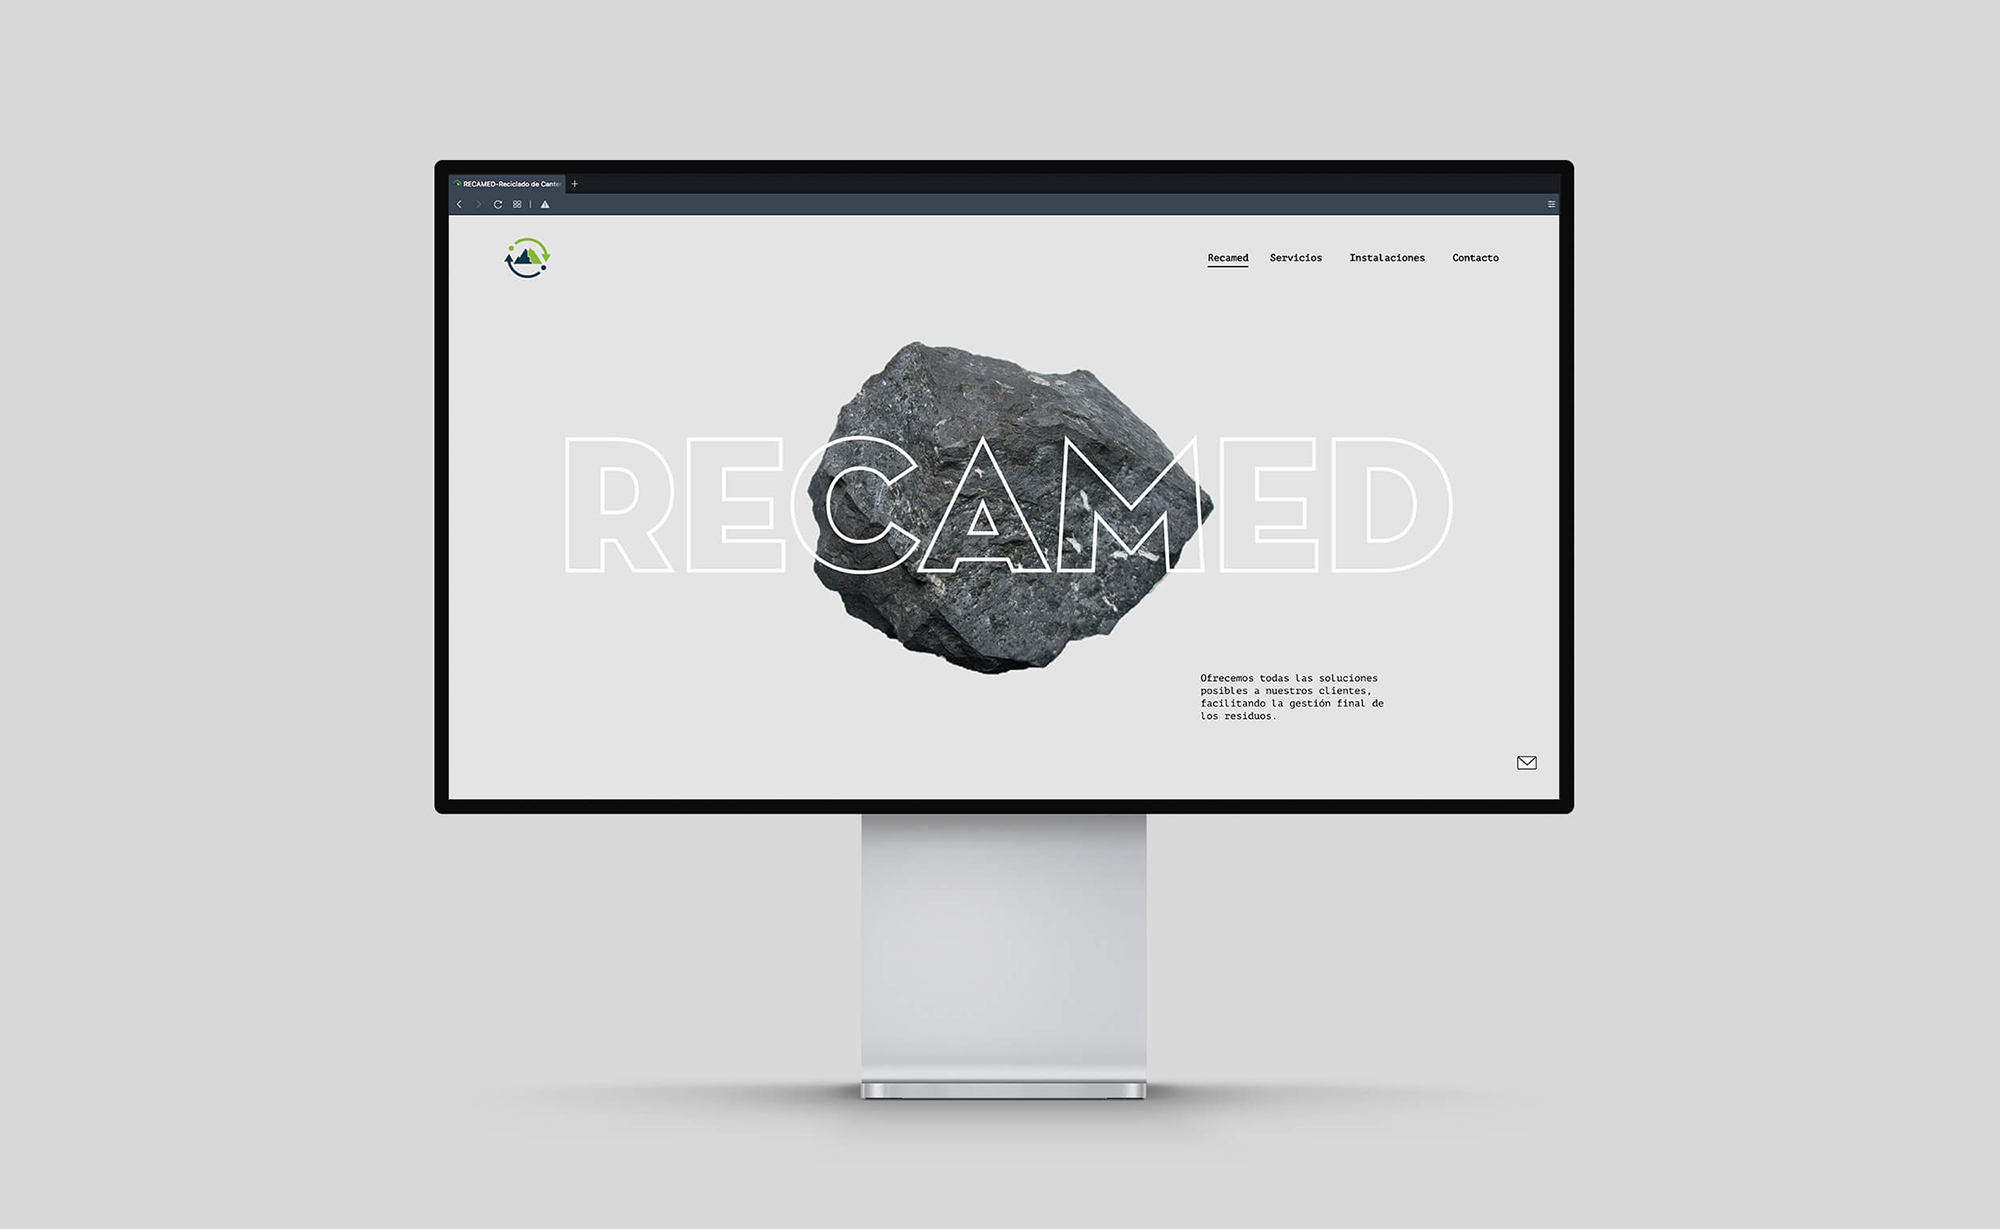 Diseño y desarrollo de website corporativo para Recamed. Vista home page sobremesa.